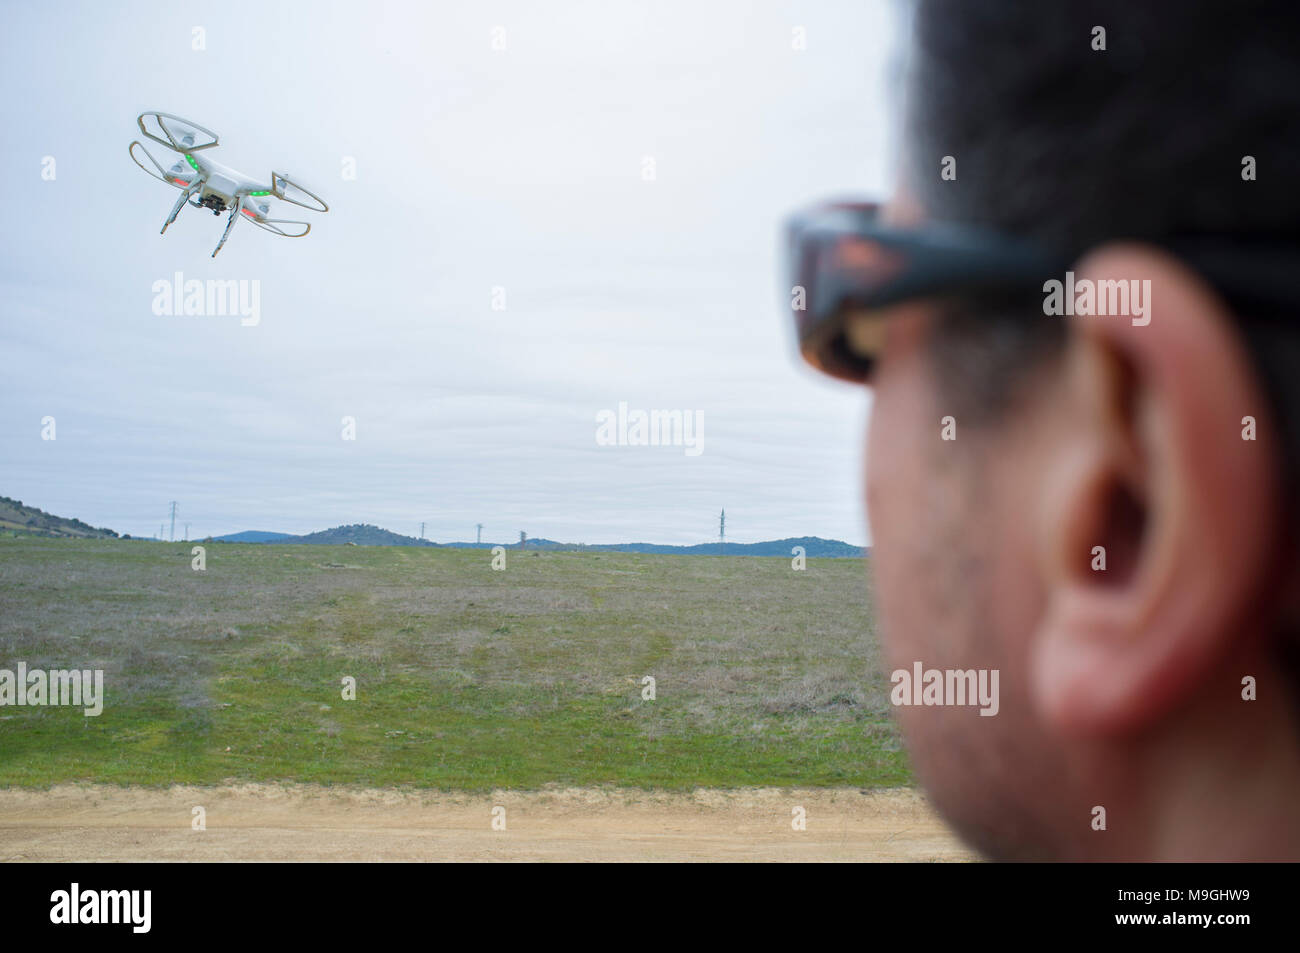 Piloto de drone un día nublado en la campiña. Acercándose a maniobrar con el balanceo excesivo Foto de stock